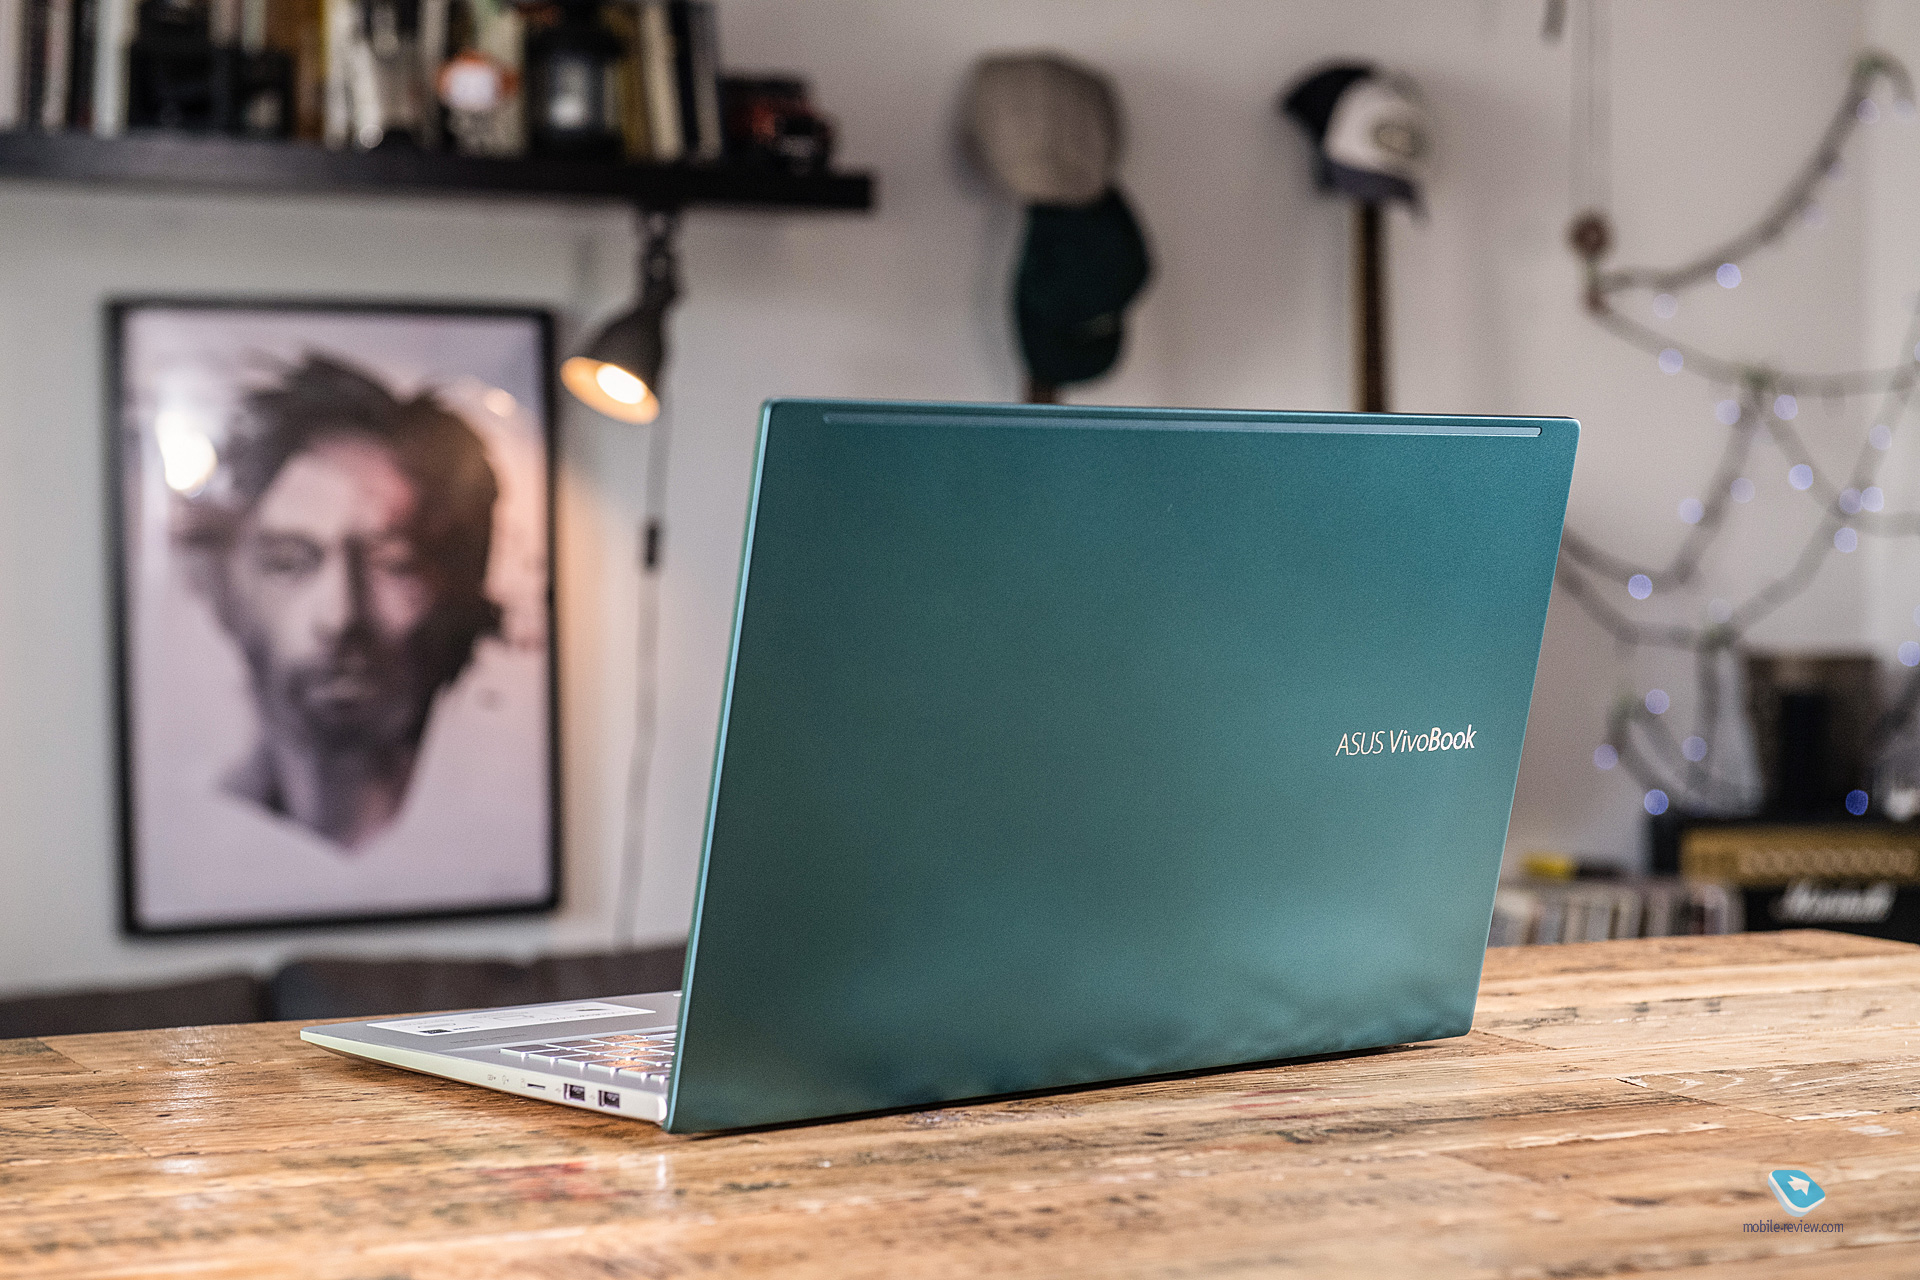 Ноутбук Asus Vivobook D540n Цена